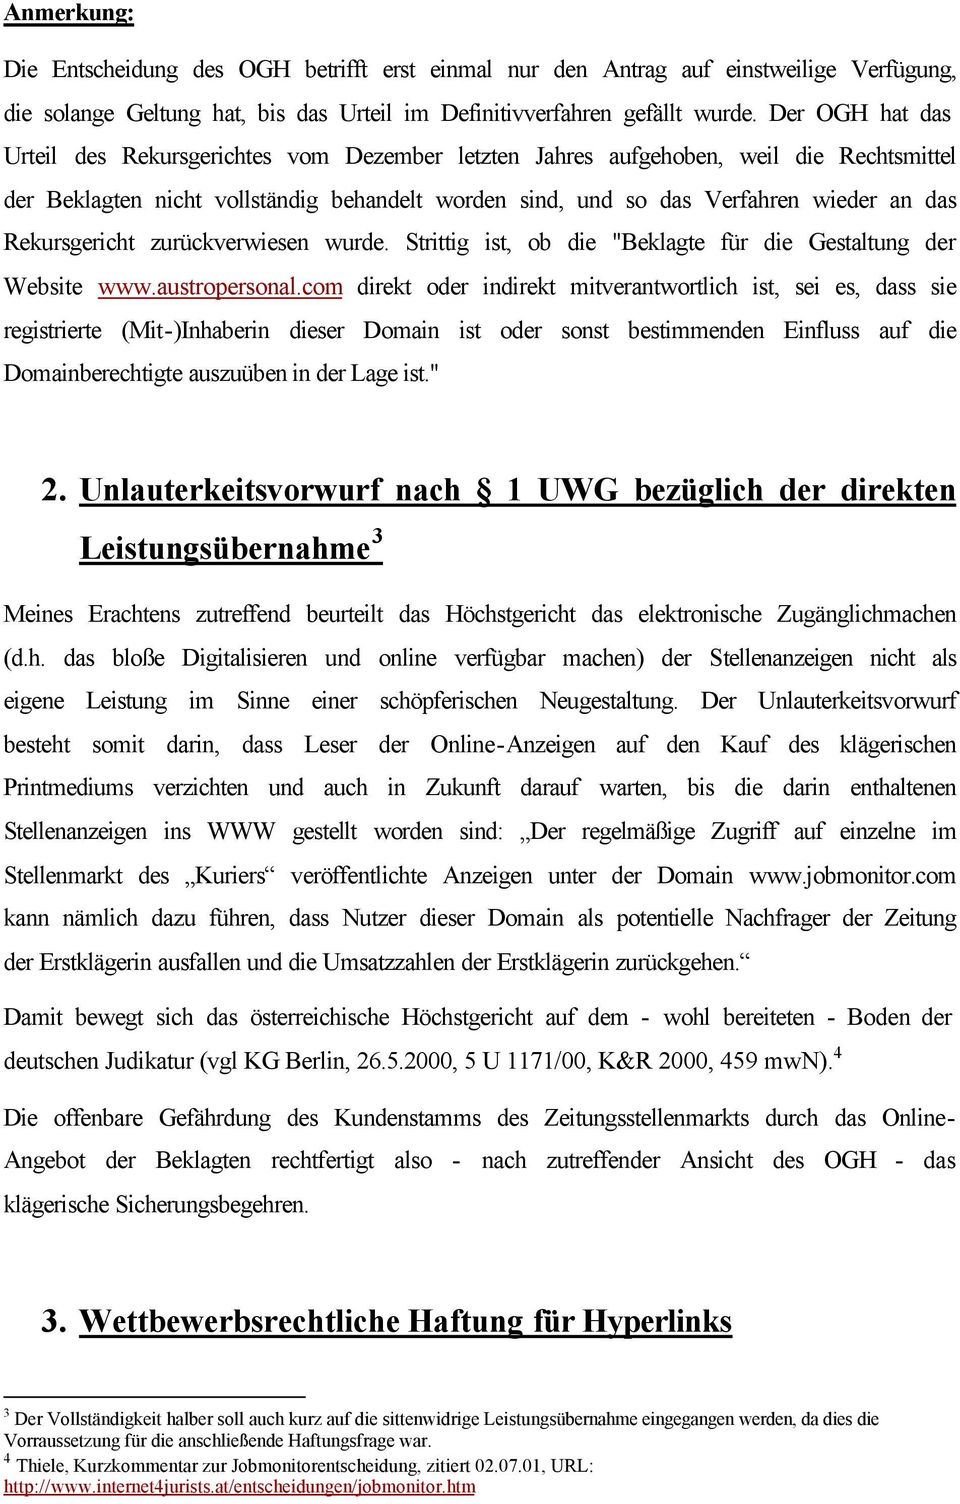 Rekursgericht zurückverwiesen wurde. Strittig ist, ob die "Beklagte für die Gestaltung der Website www.austropersonal.